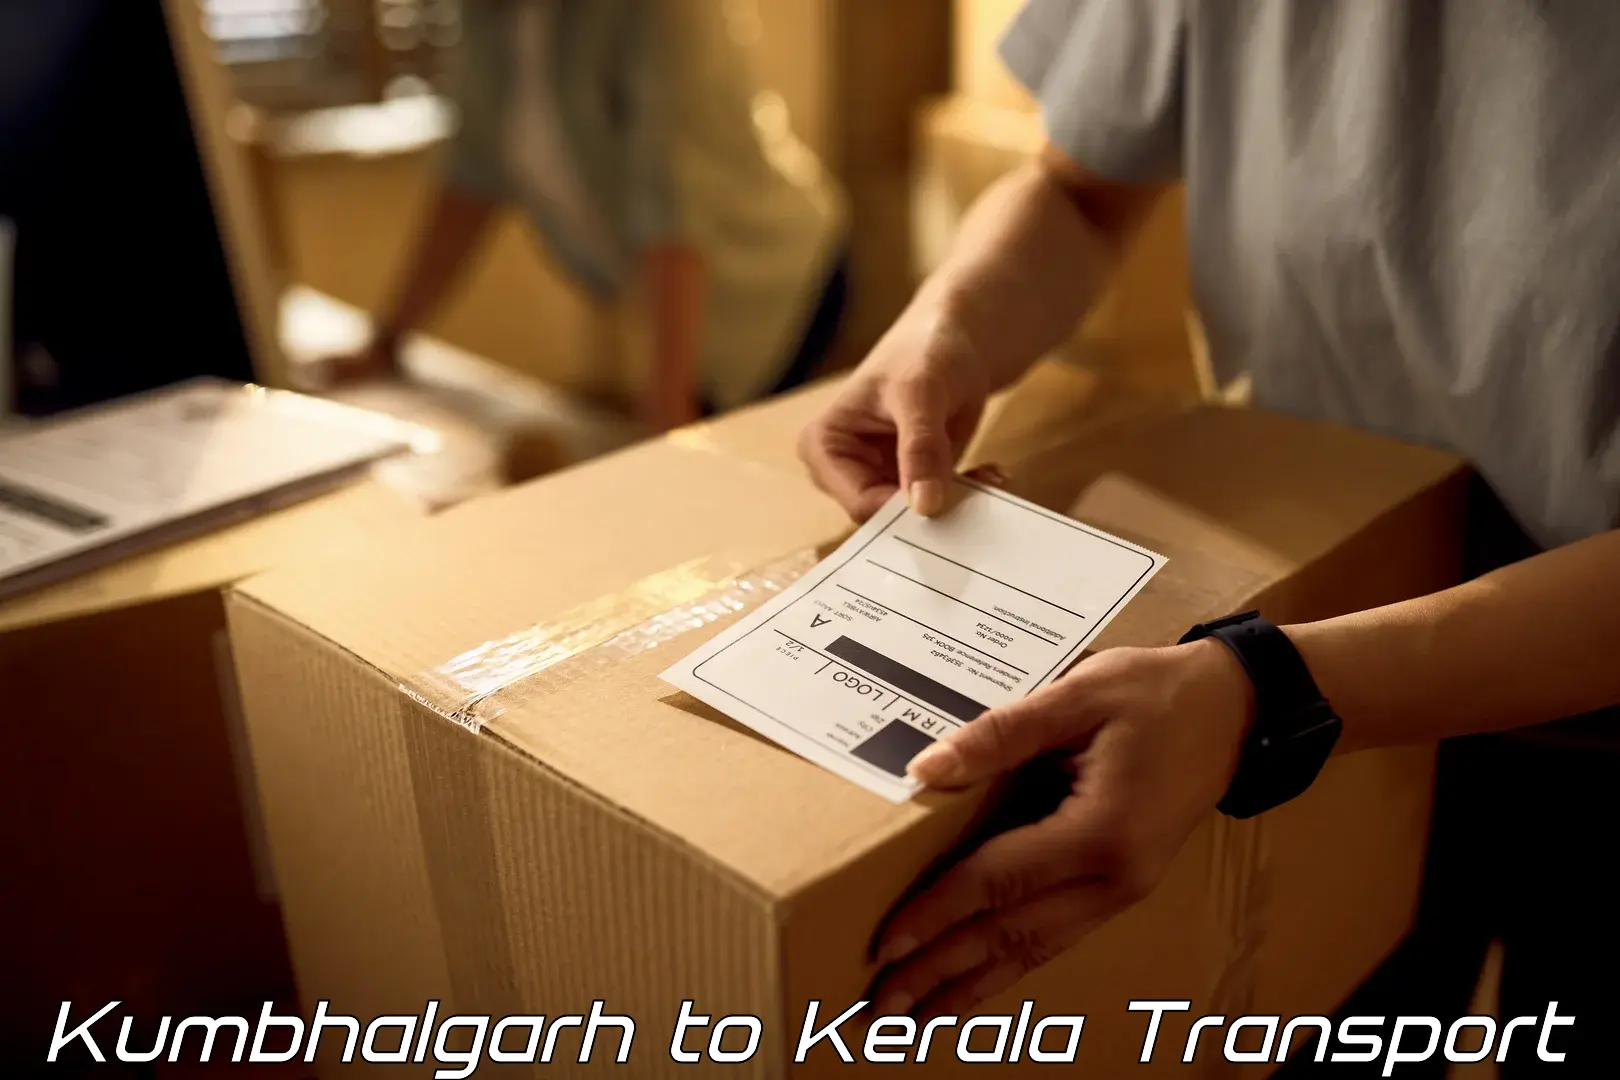 Daily transport service Kumbhalgarh to Kalluvathukkal